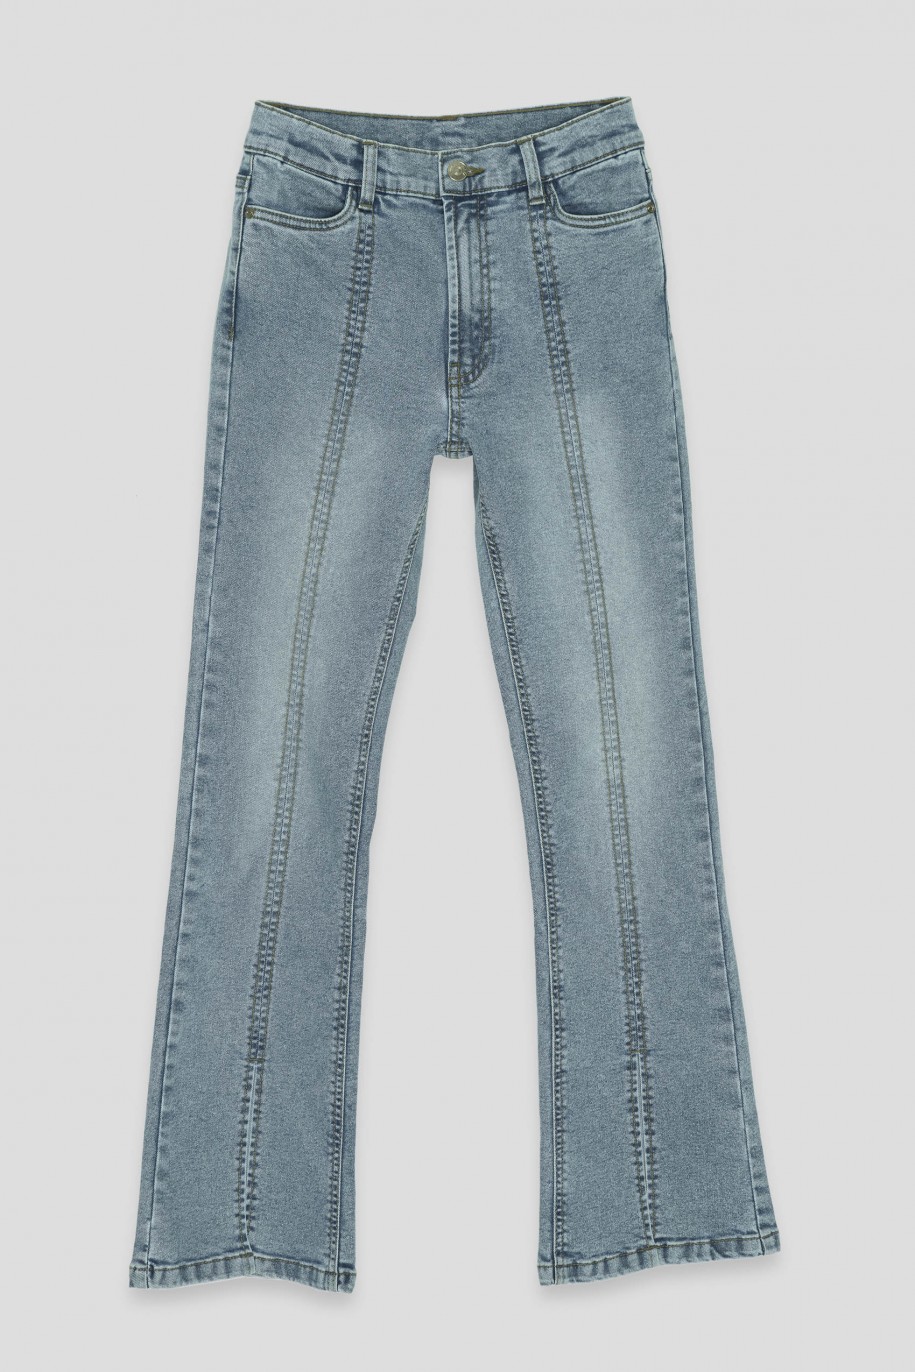 Niebieskie jeansy typu dzwony - 40863